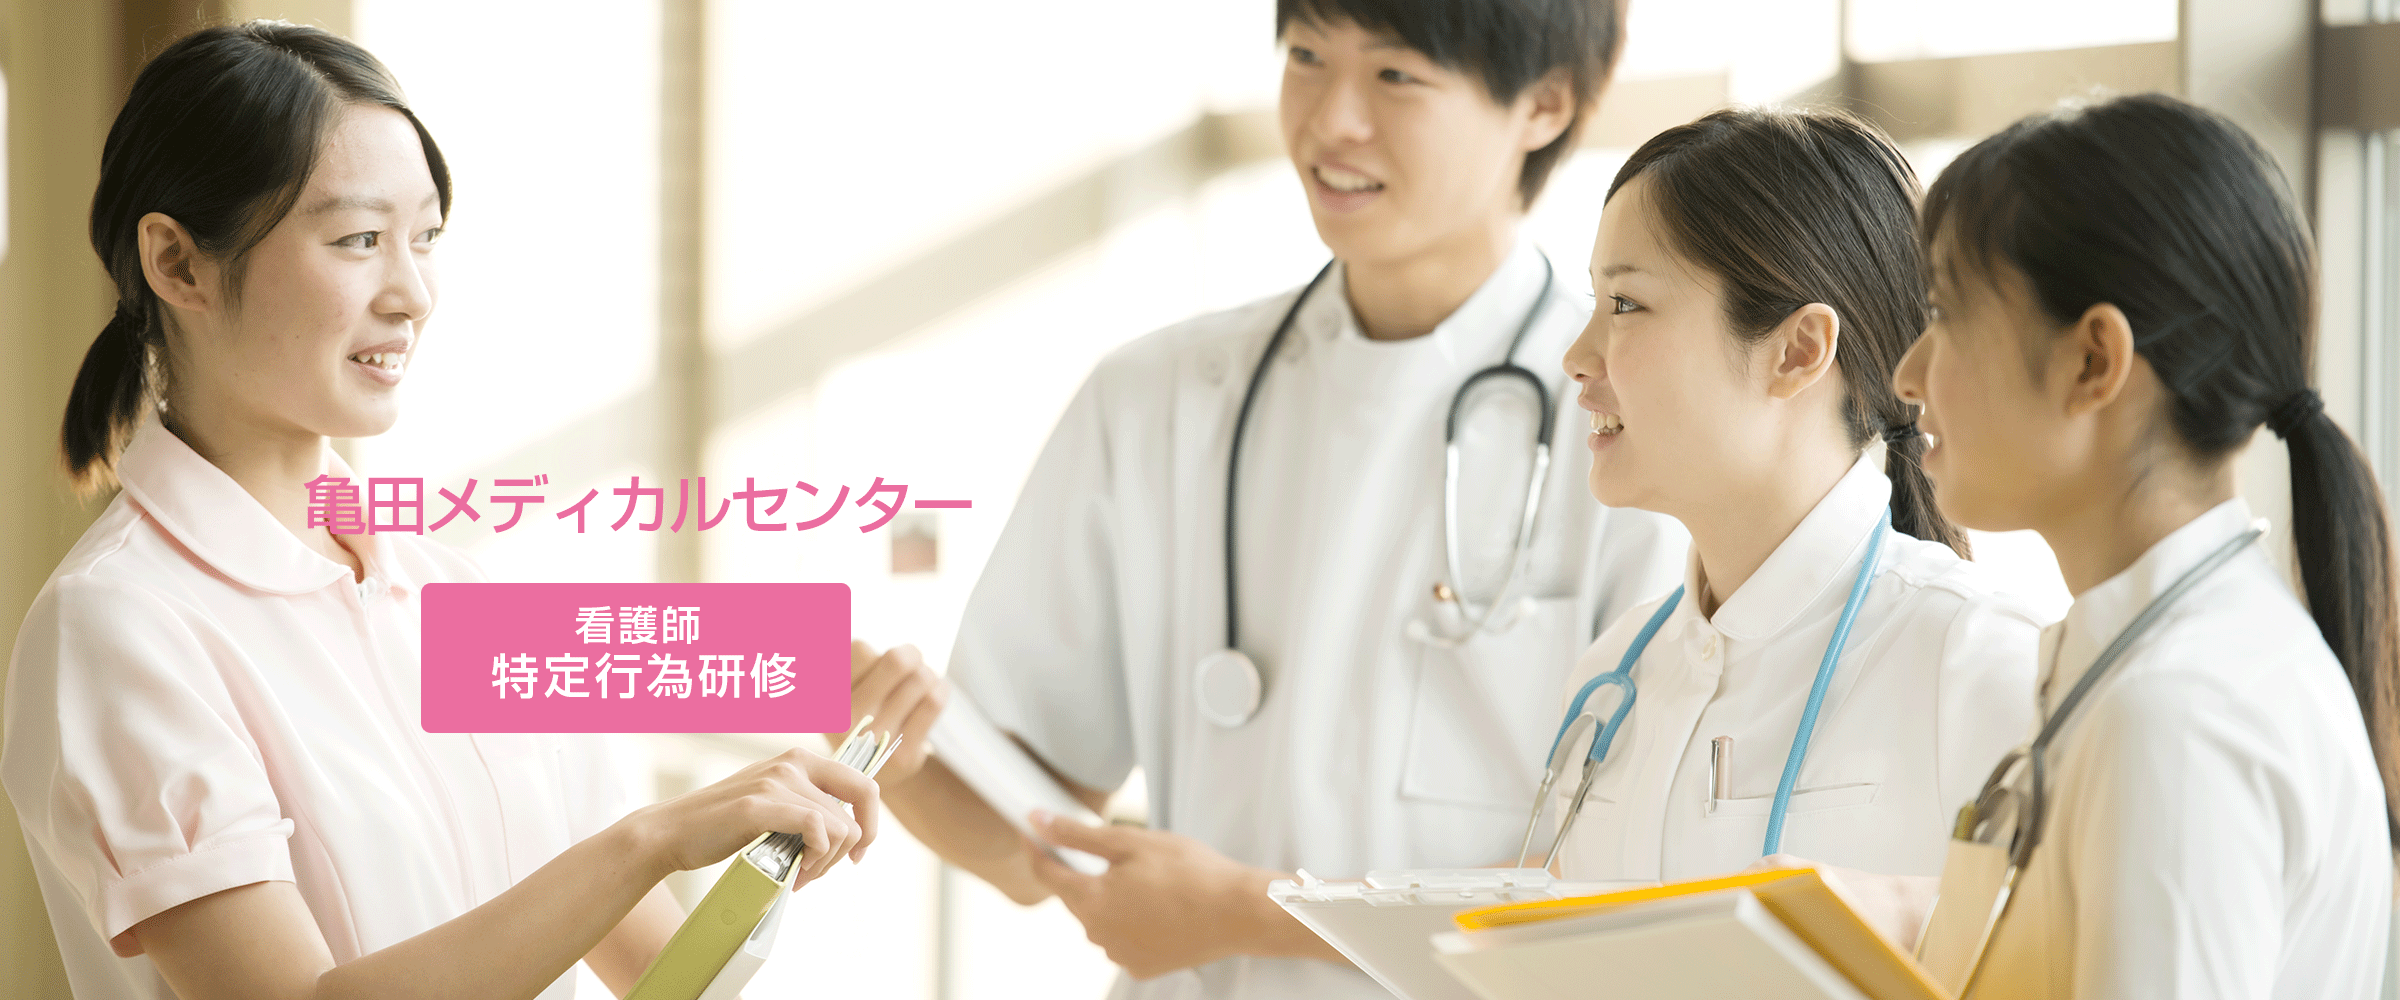 亀田メディカルセンター看護師特定行為研修